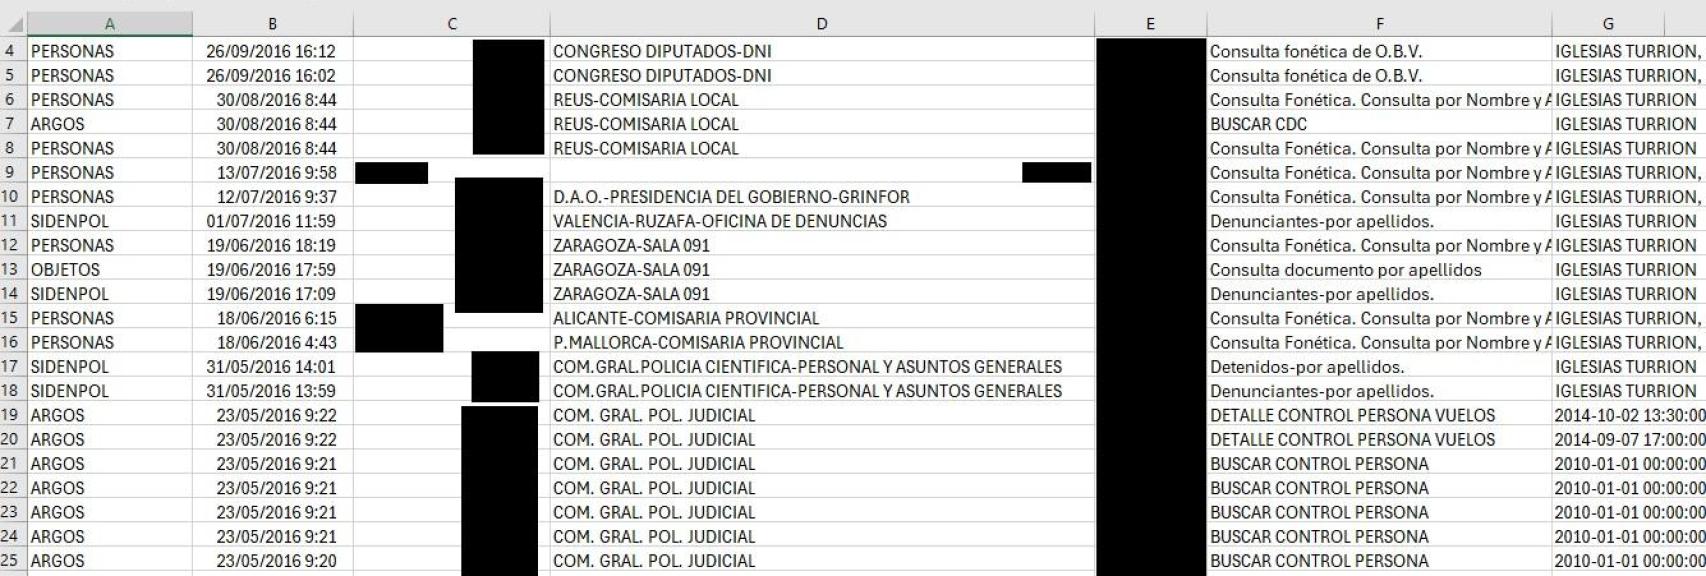 Excel sobre los accesos a bases de datos relativos a Pablo Iglesias Turrión.